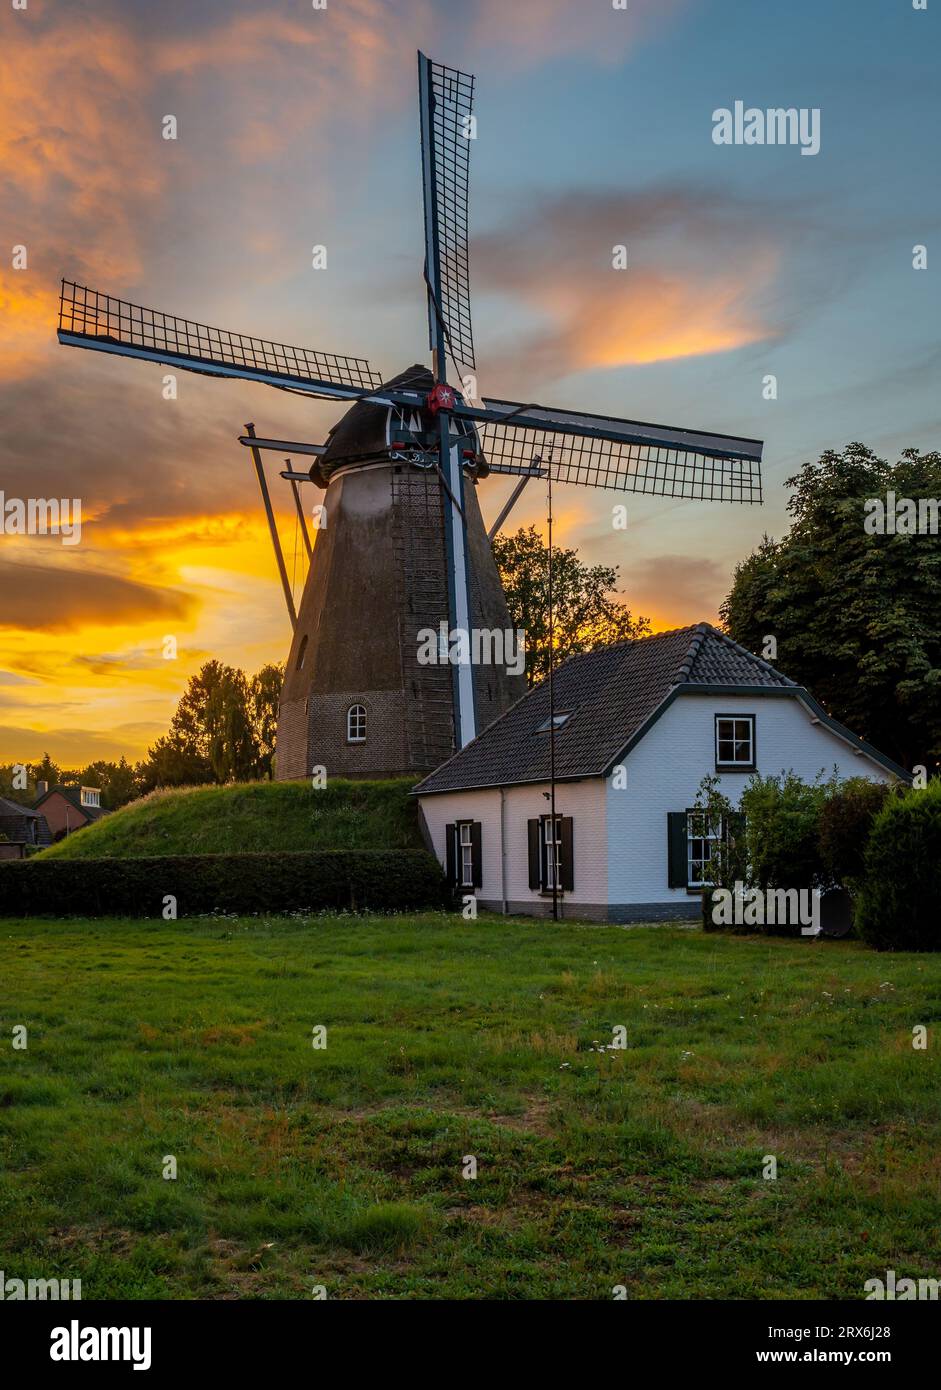 Plan vertical du moulin à vent hollandais traditionnel dans la ville d'Ede, province de Gelderland, par coucher de soleil coloré Banque D'Images